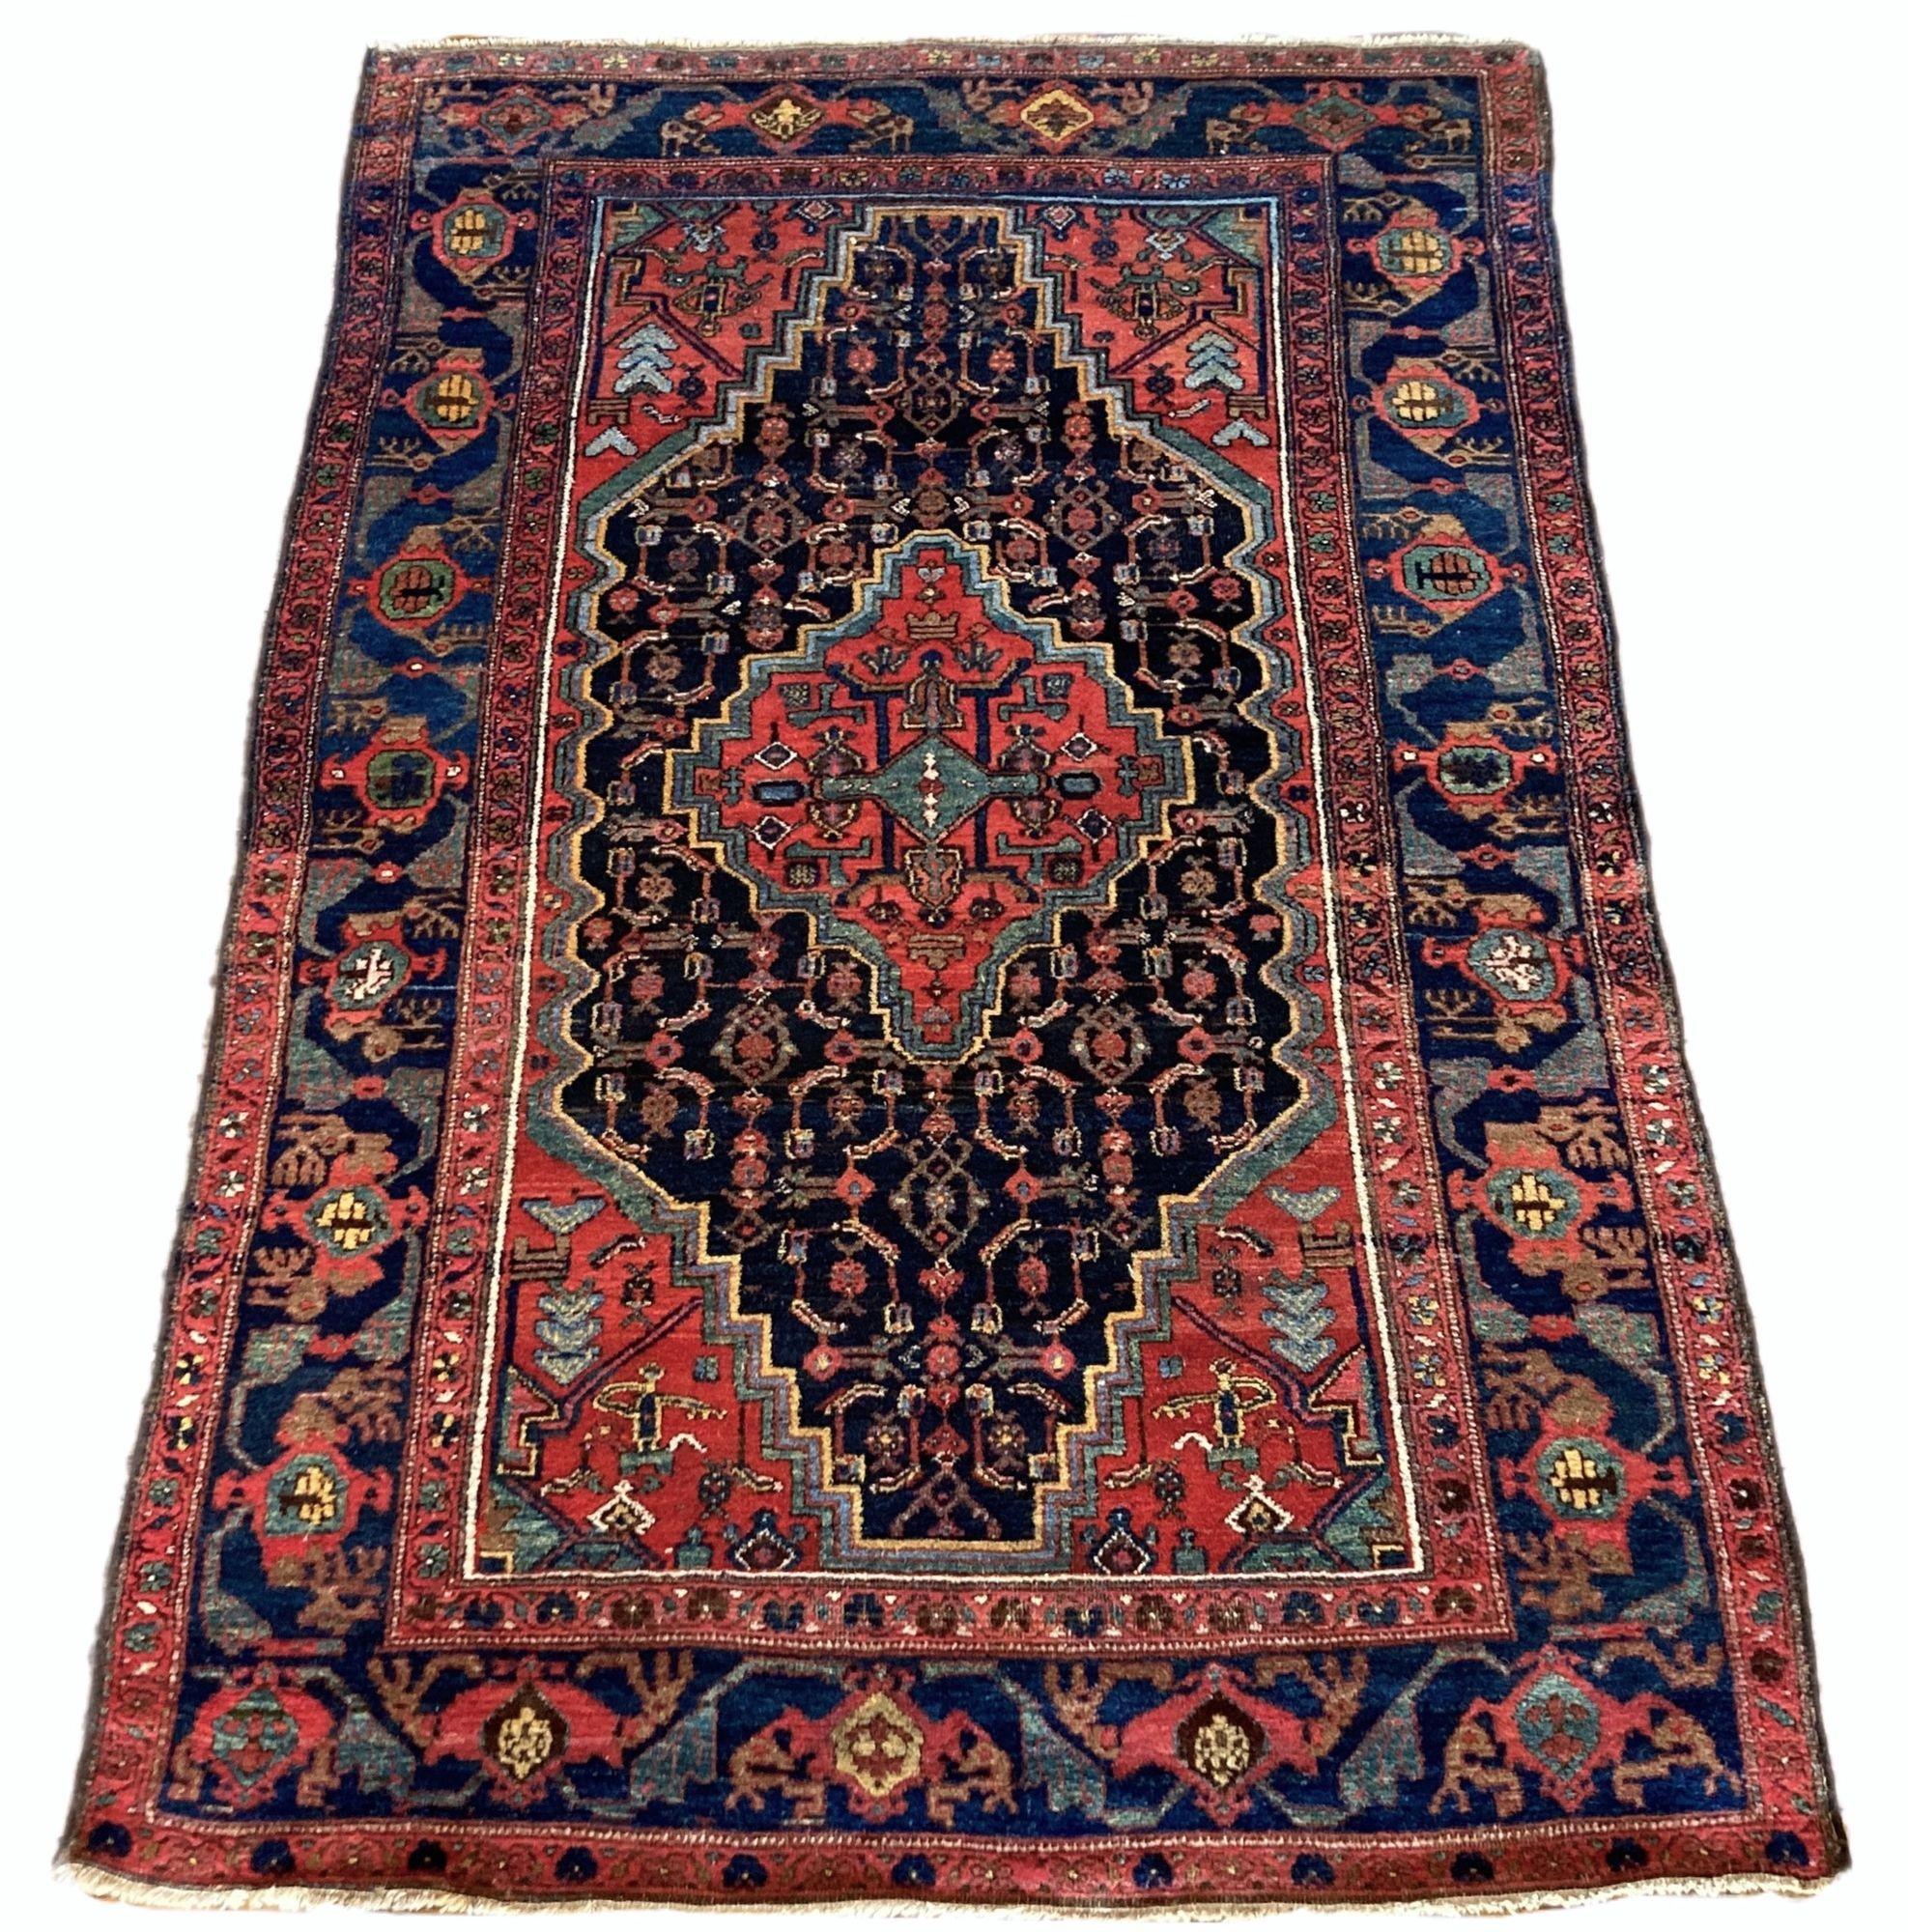 Ein schöner antiker kurdischer Teppich, handgewebt um 1910. Das Design zeigt ein einzelnes Terrakotta-Medaillon auf einem tiefen indigoblauen Feld und einer ähnlichen Bordüre. Wie bei vielen kurdischen Teppichen sind die Färbungen besonders gut und